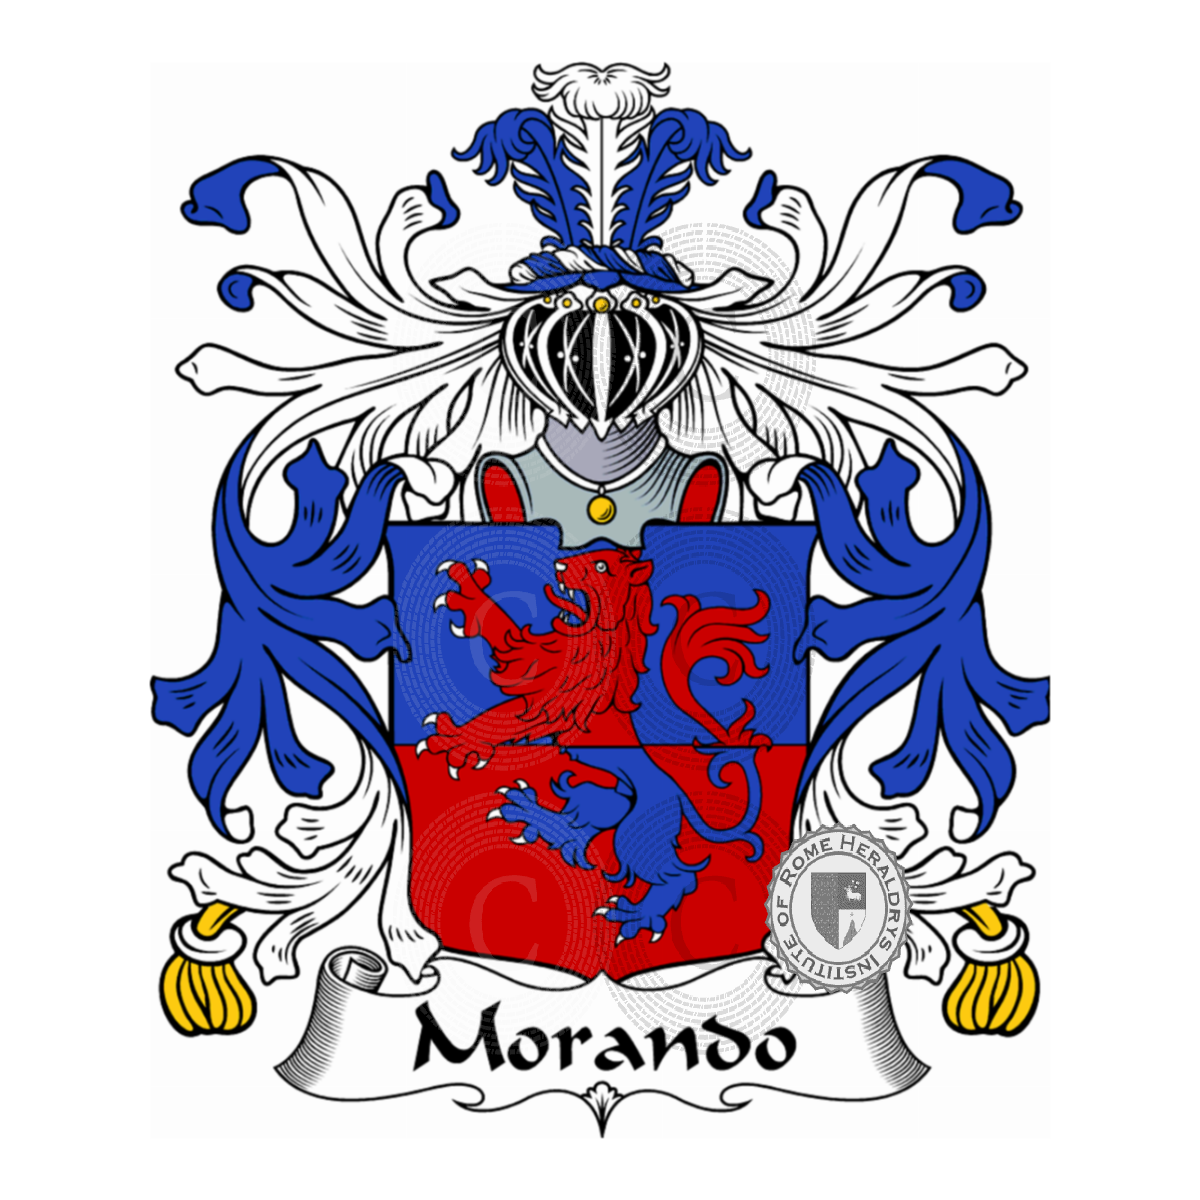 Wappen der FamilieMorando, Morando Gramatici